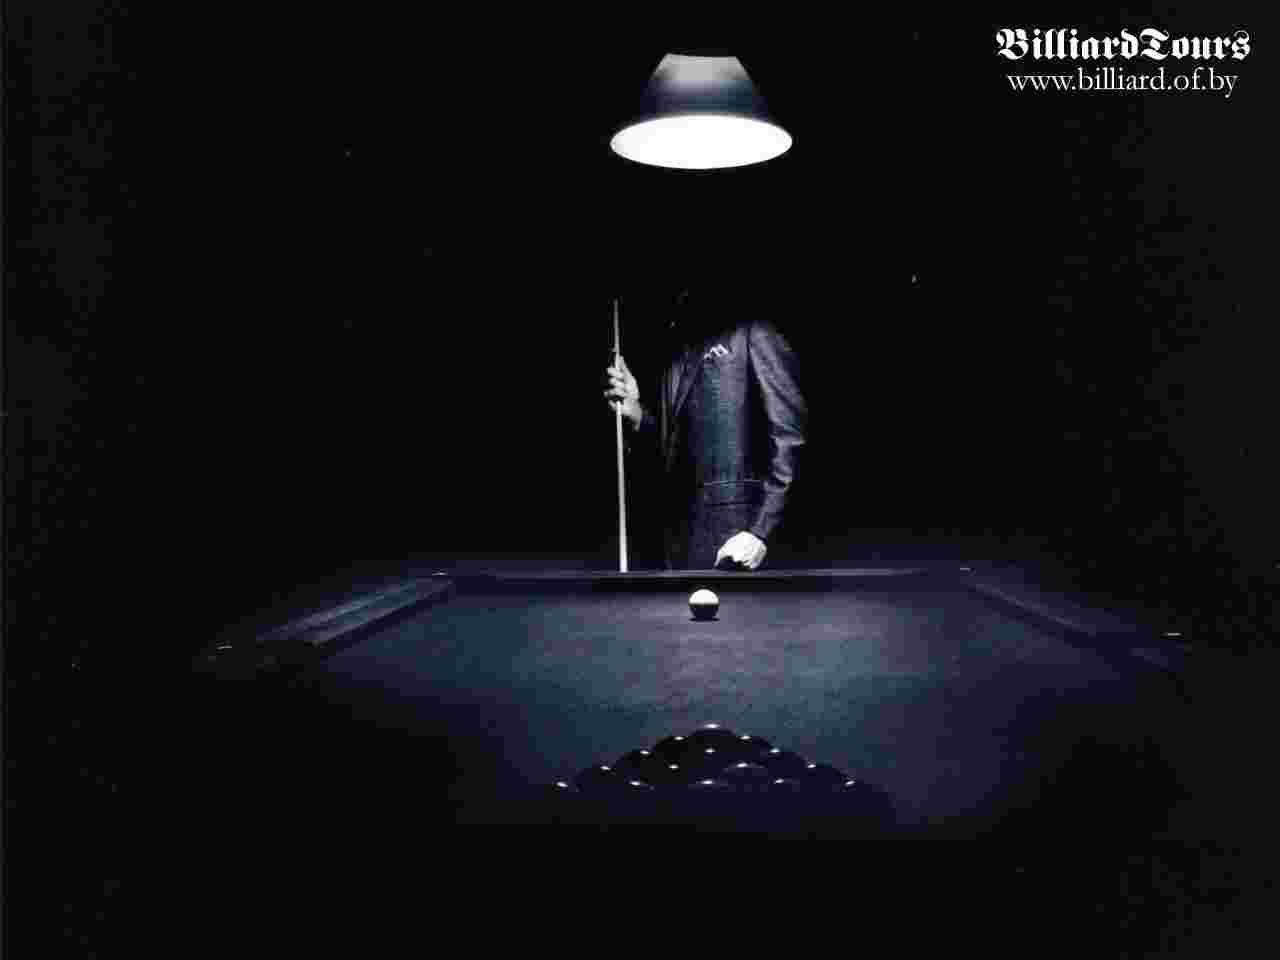 Billiard 05 wallpaper